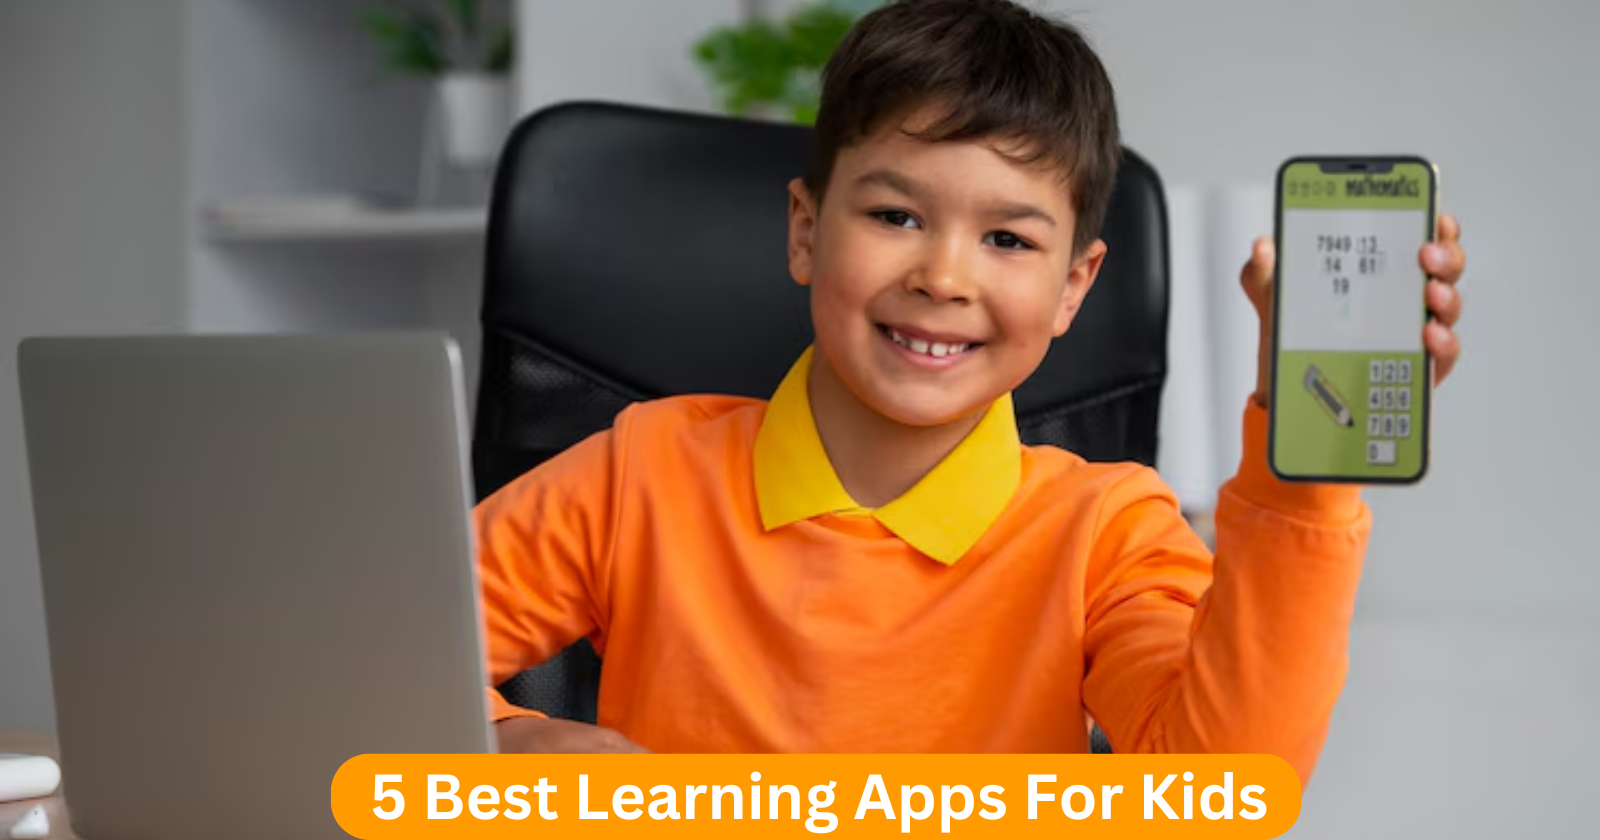 5 Best Learning Apps For Kids: जाने सम्पूर्ण जानकारी विस्तार से